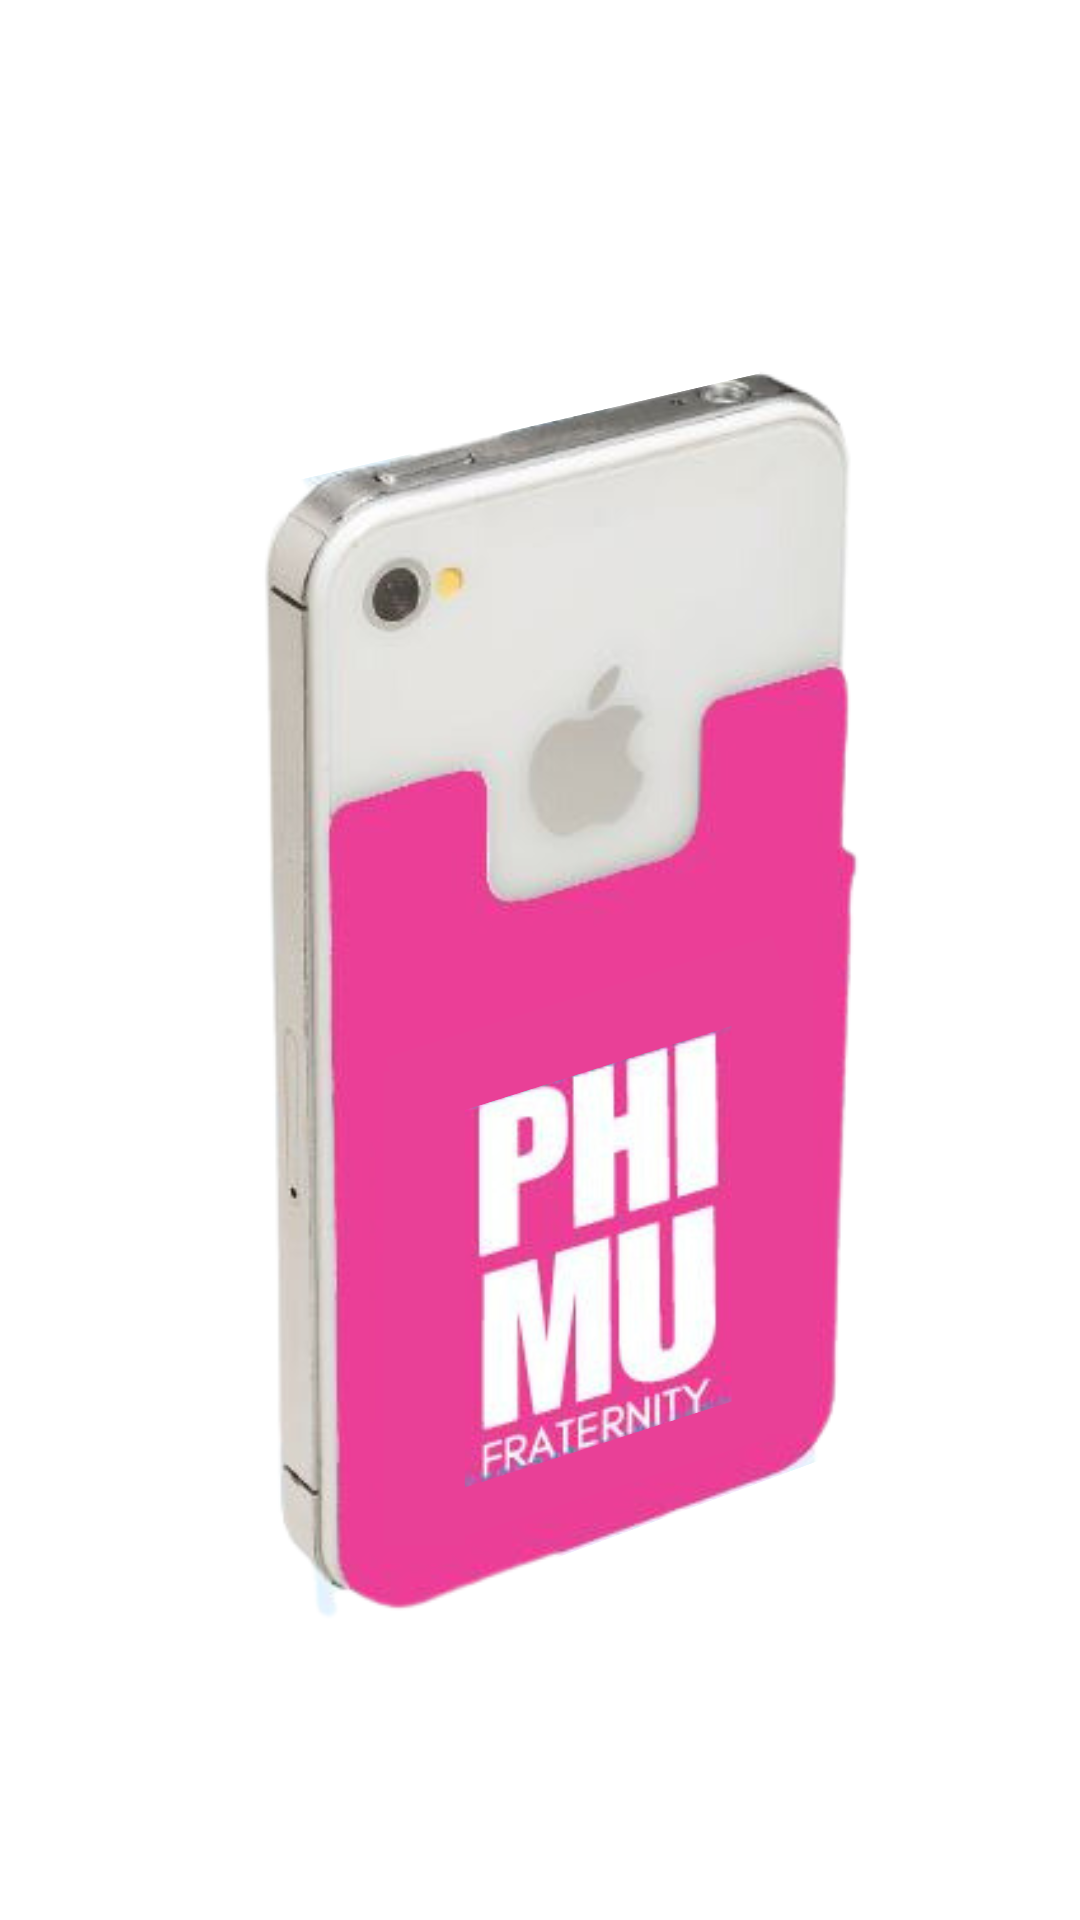 Phi Pack #2: I Heart Phi Mu